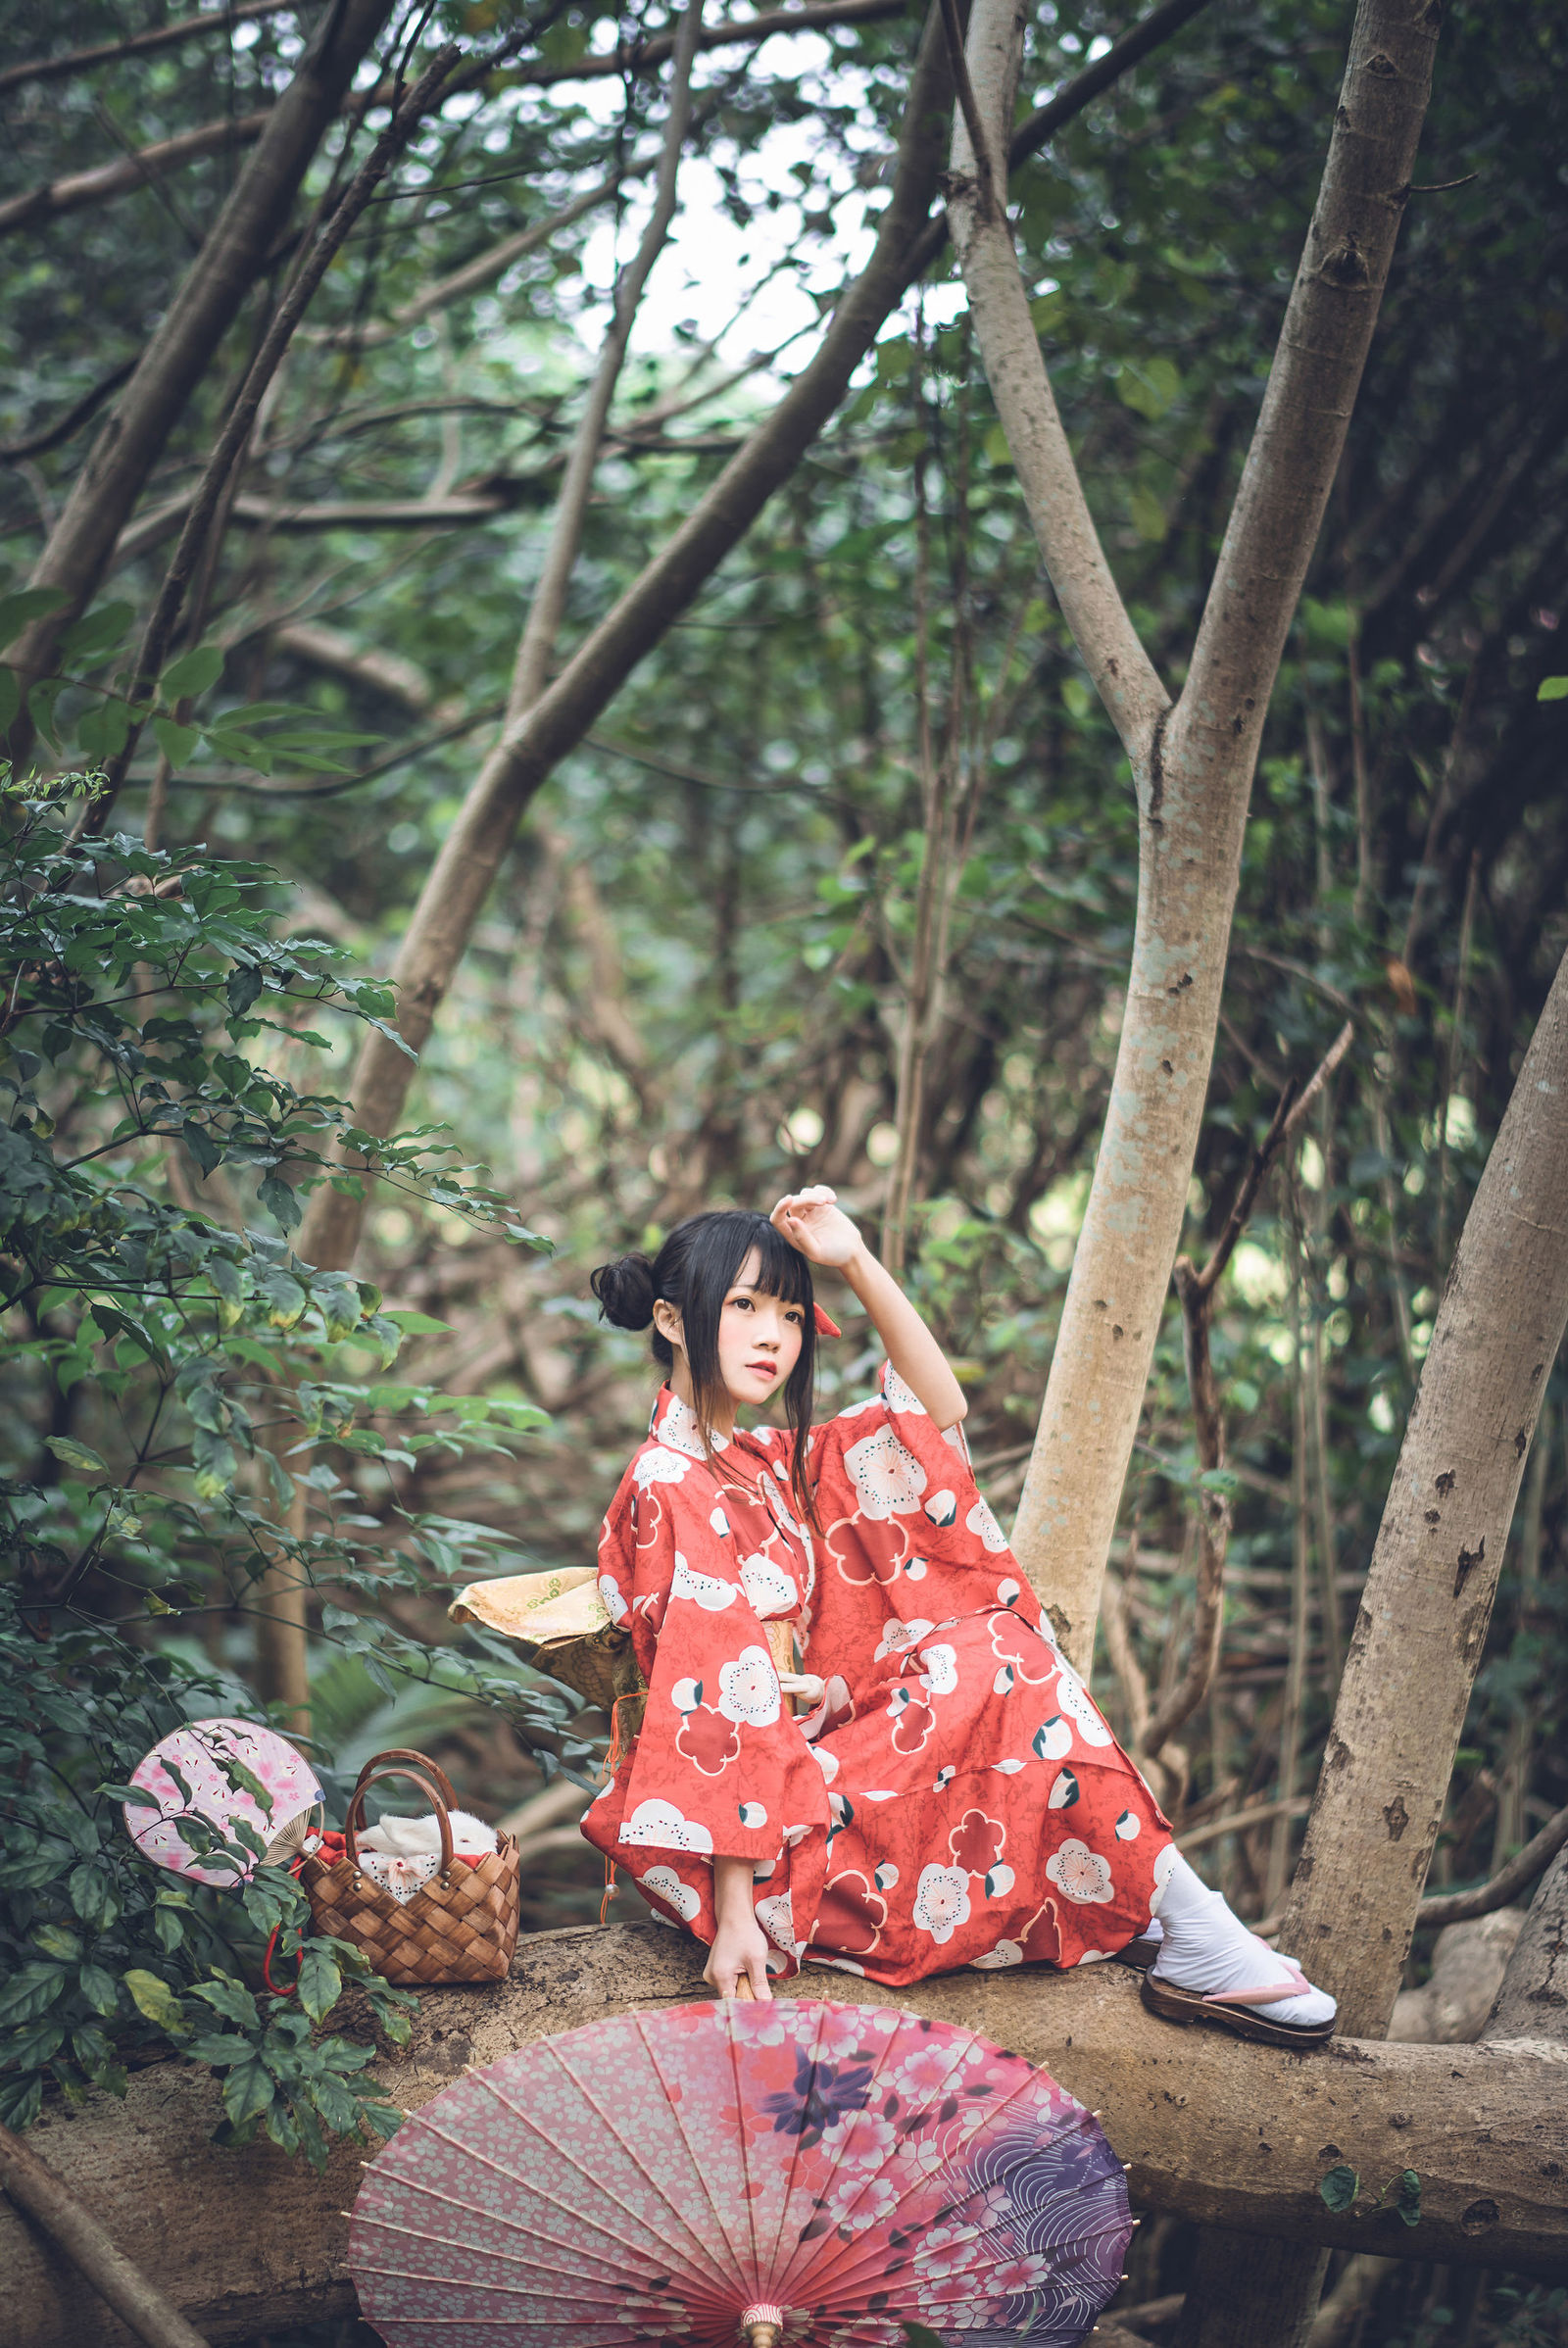 [网红COSER] 桜桃喵 - 夏日祭 COS写真套图2 